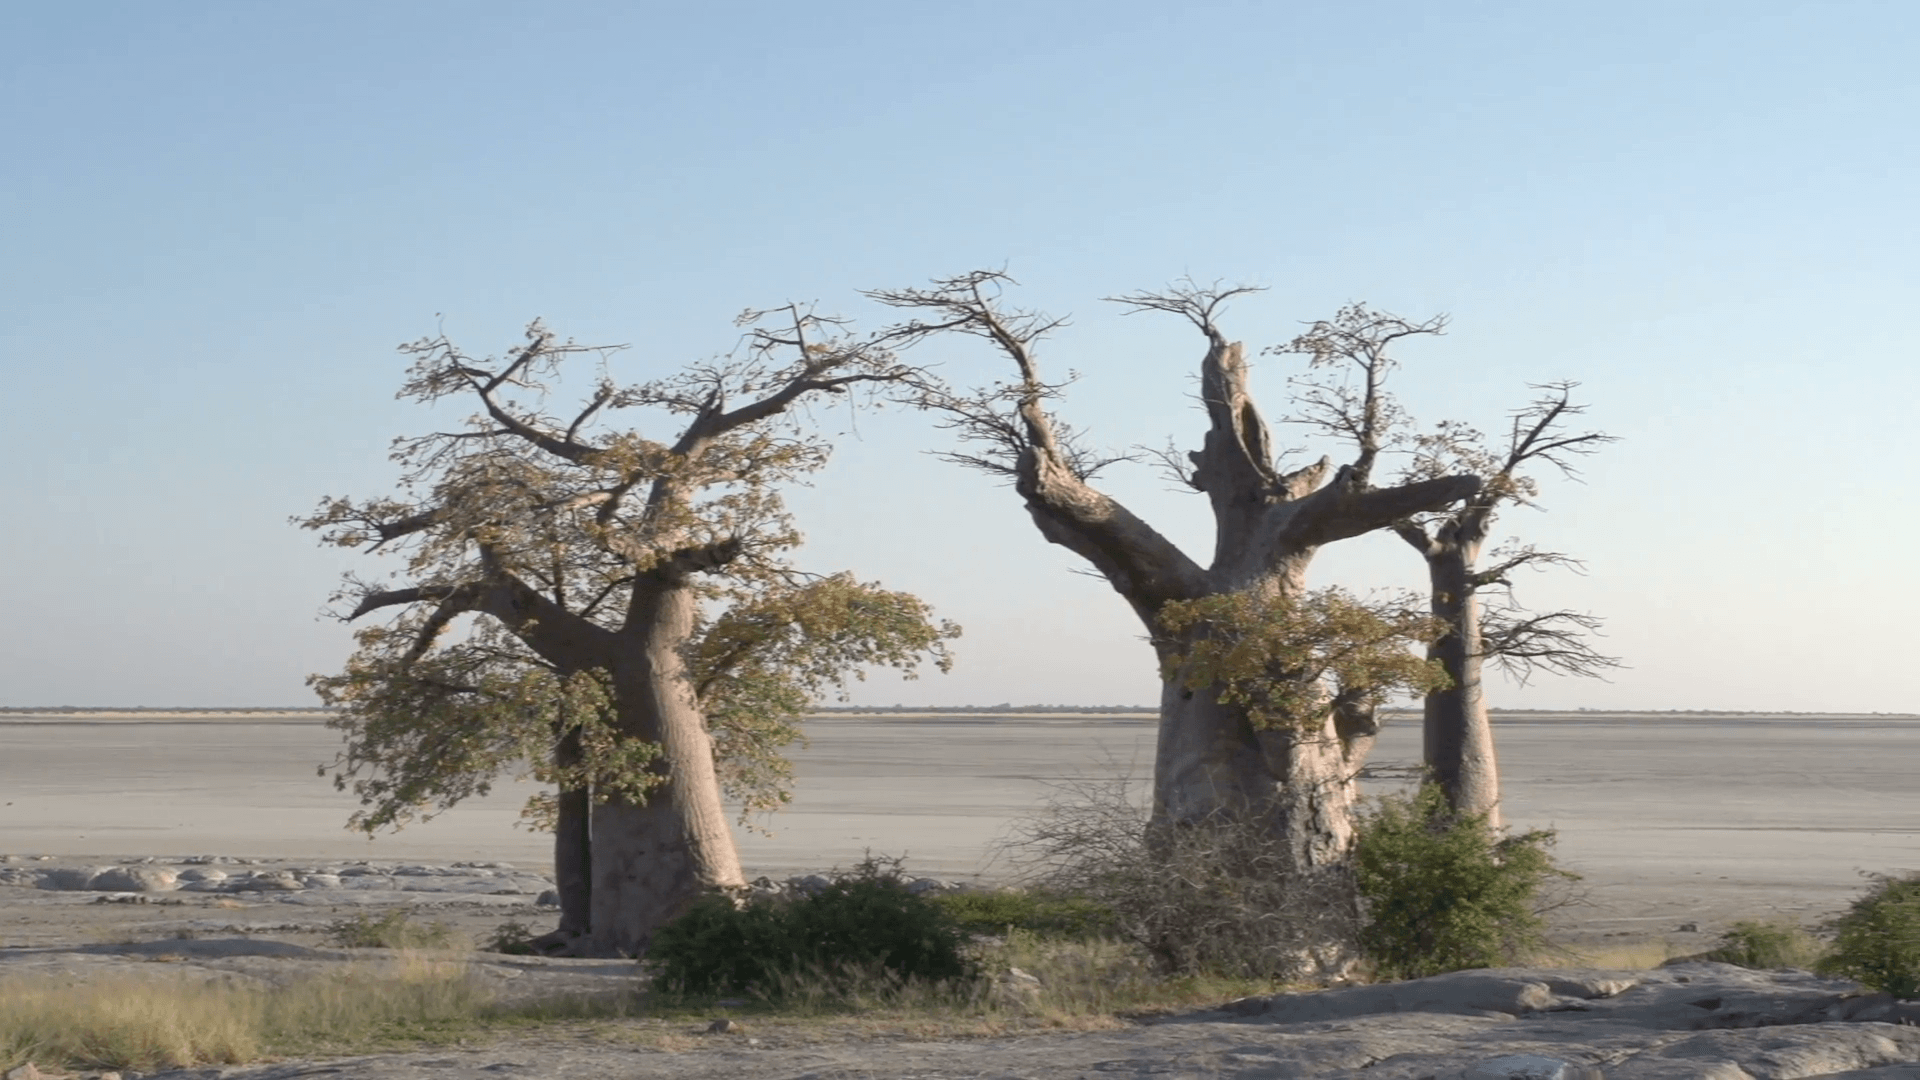 Panning shot of Baobab trees with Makgadikgadi Pans in